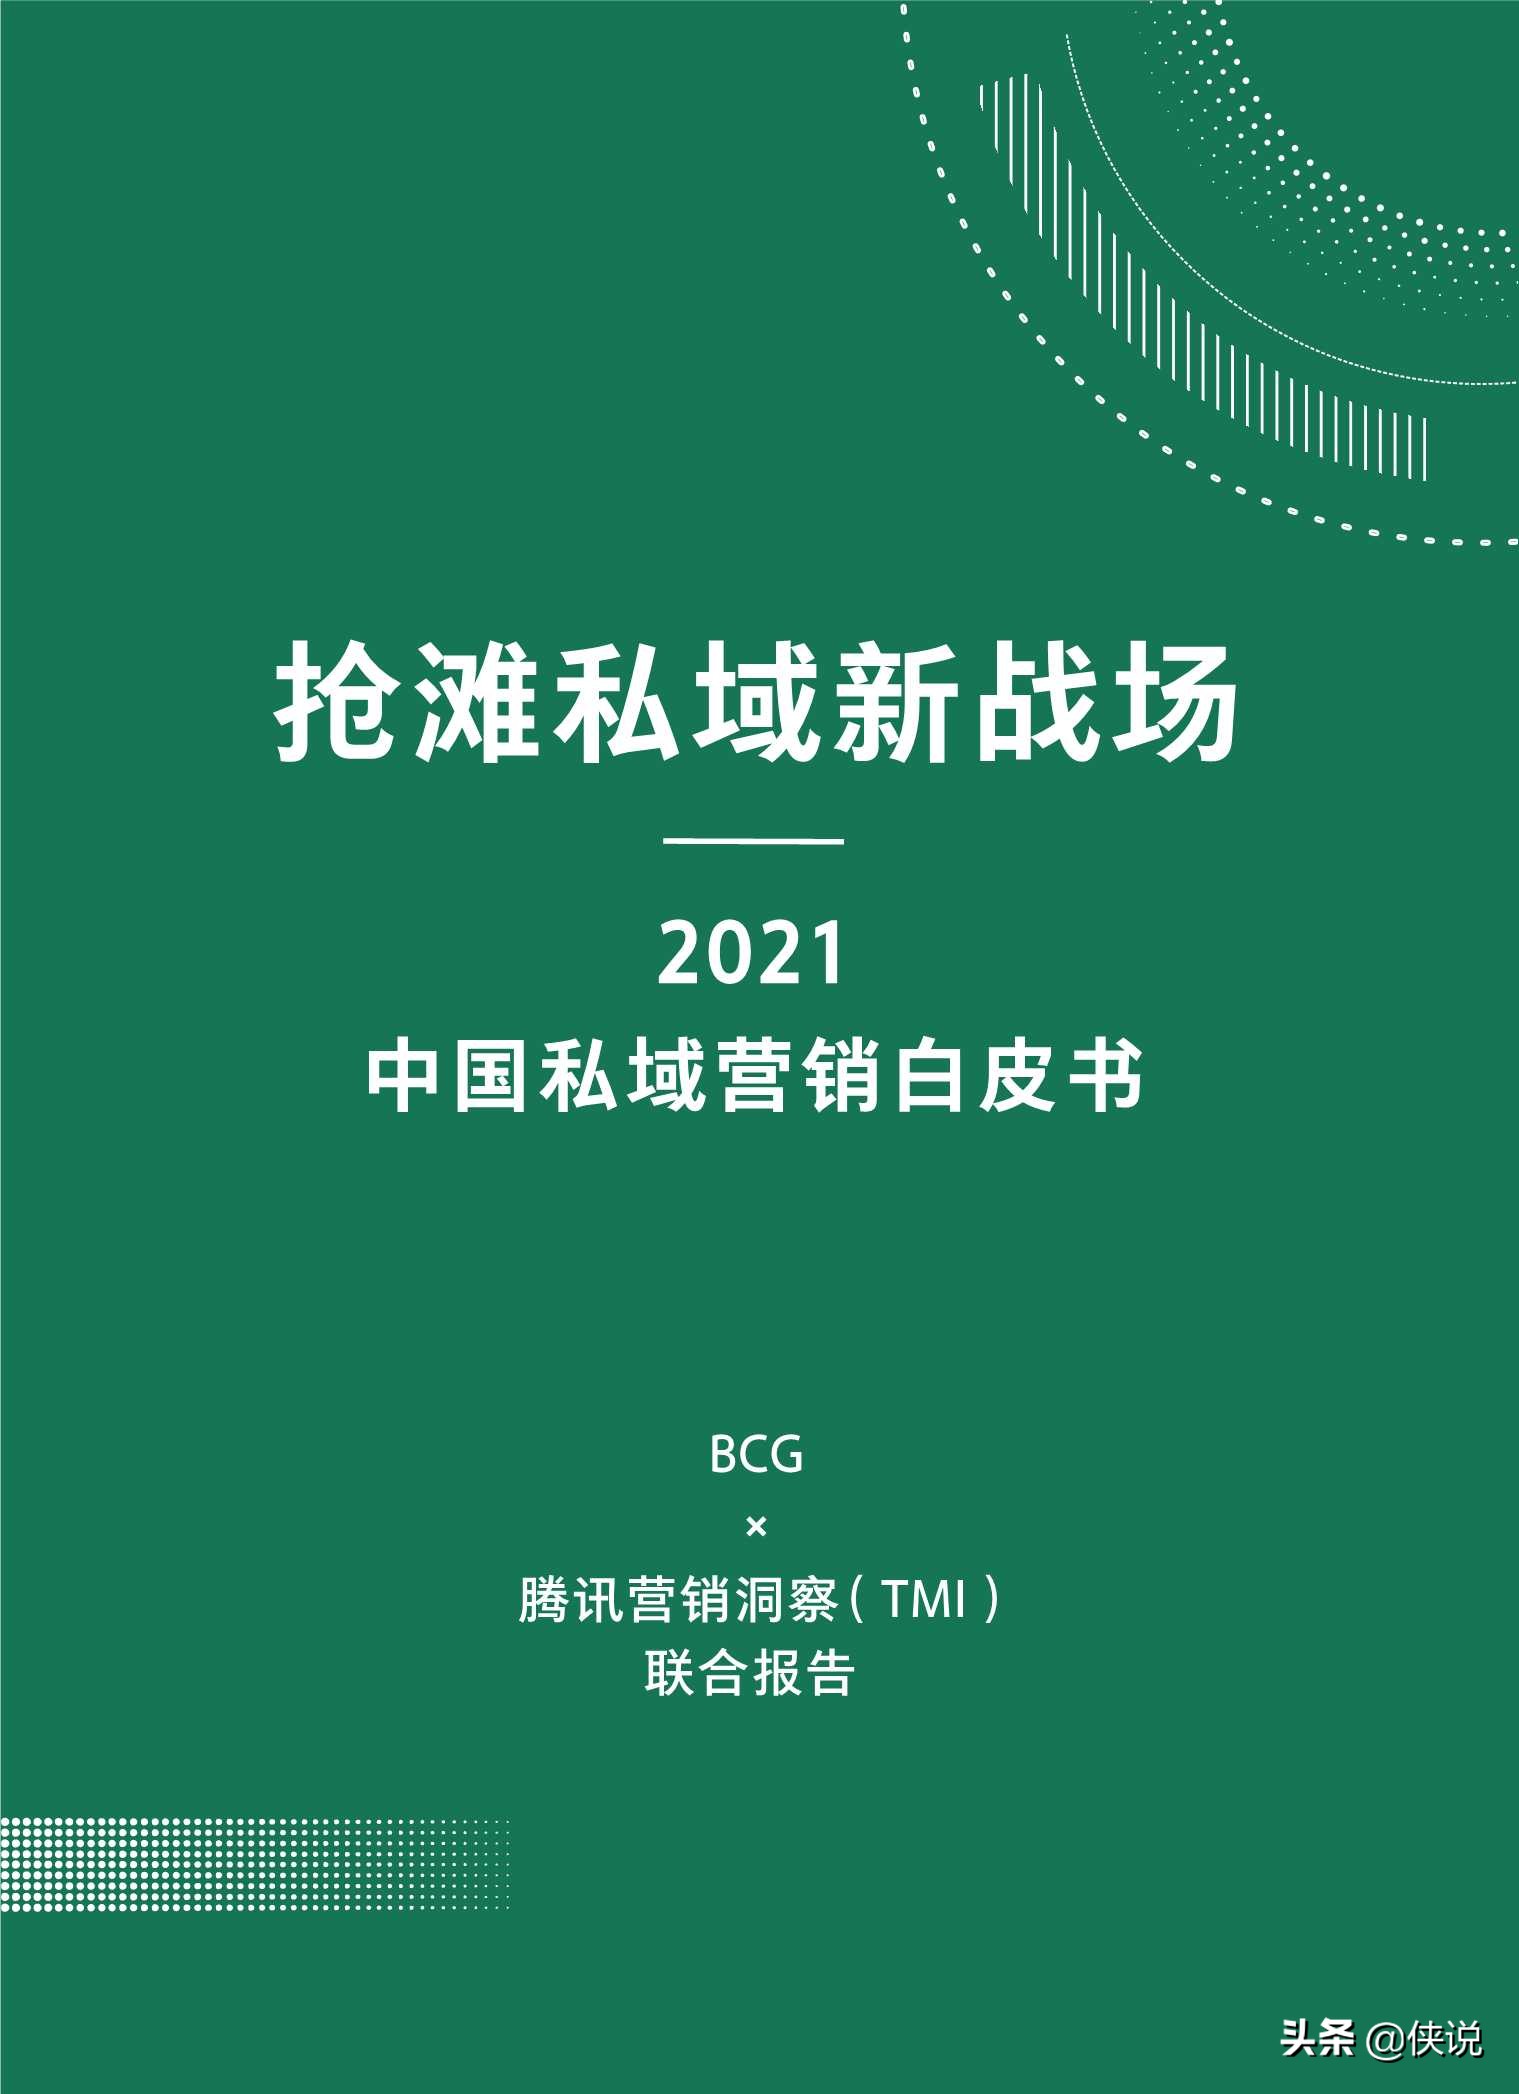 抢滩私域新战场：2021中国私域营销白皮书